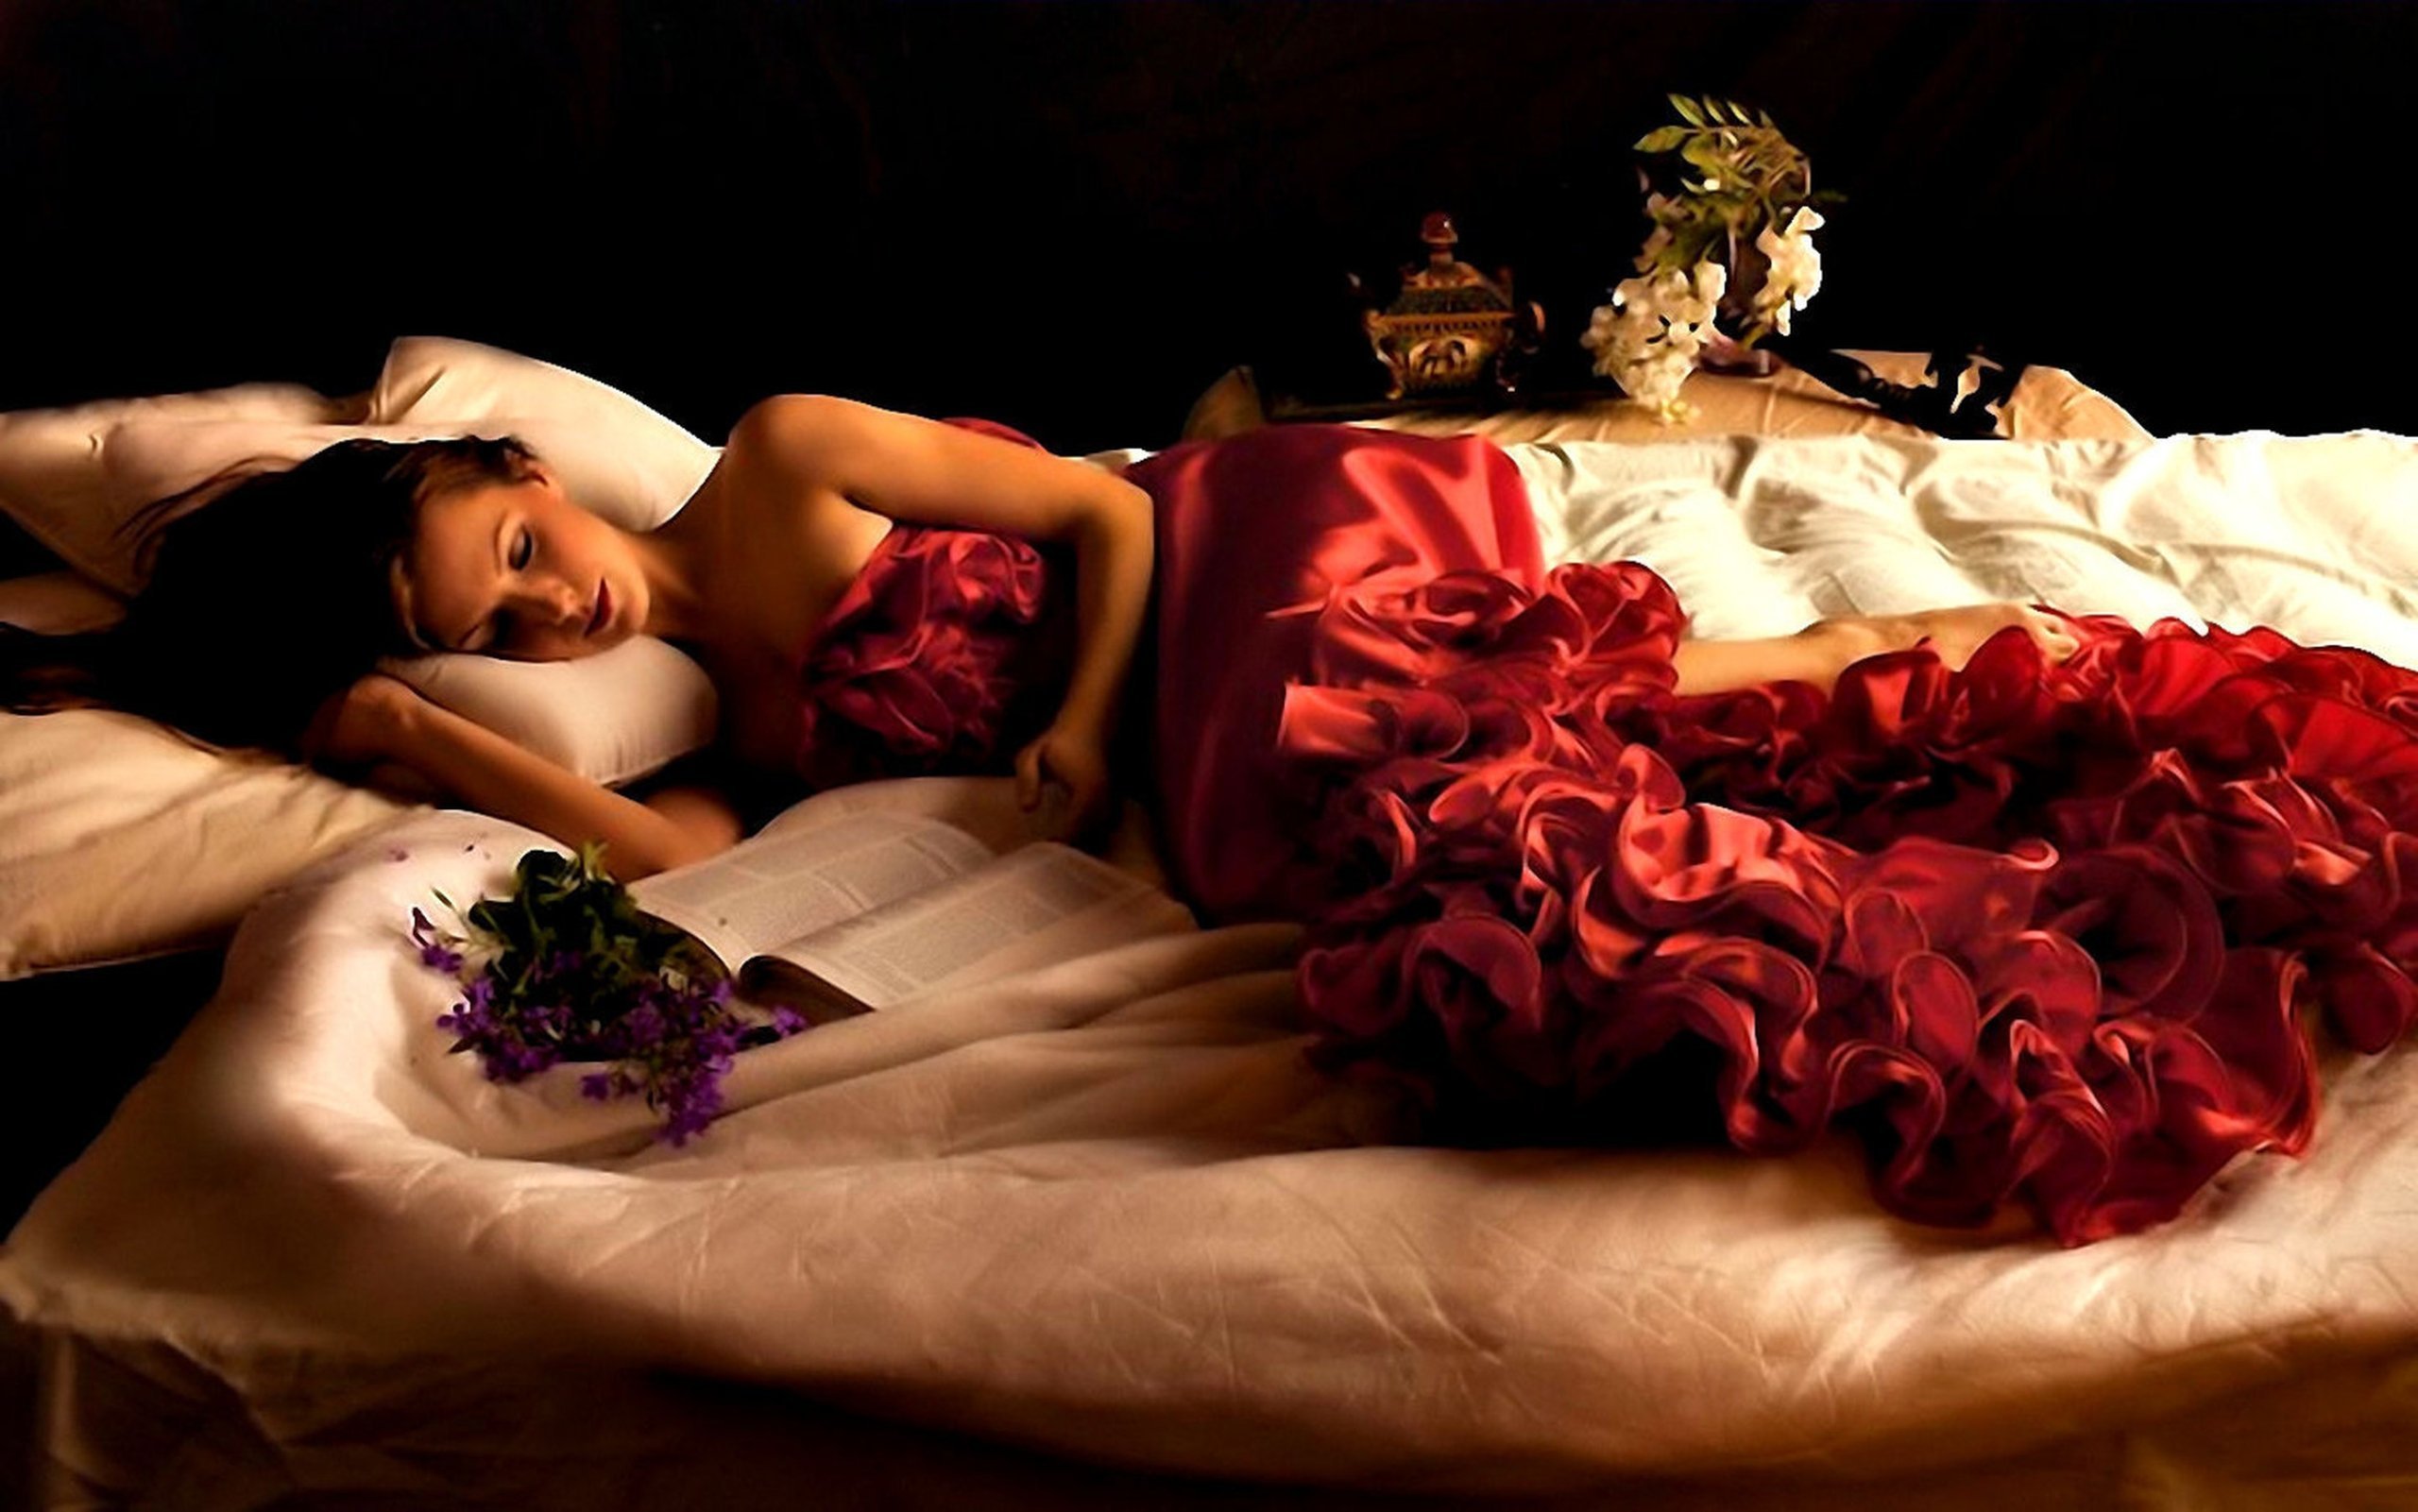 Страстная леди. Девушка в постели с цветами. Романтическая девушка.